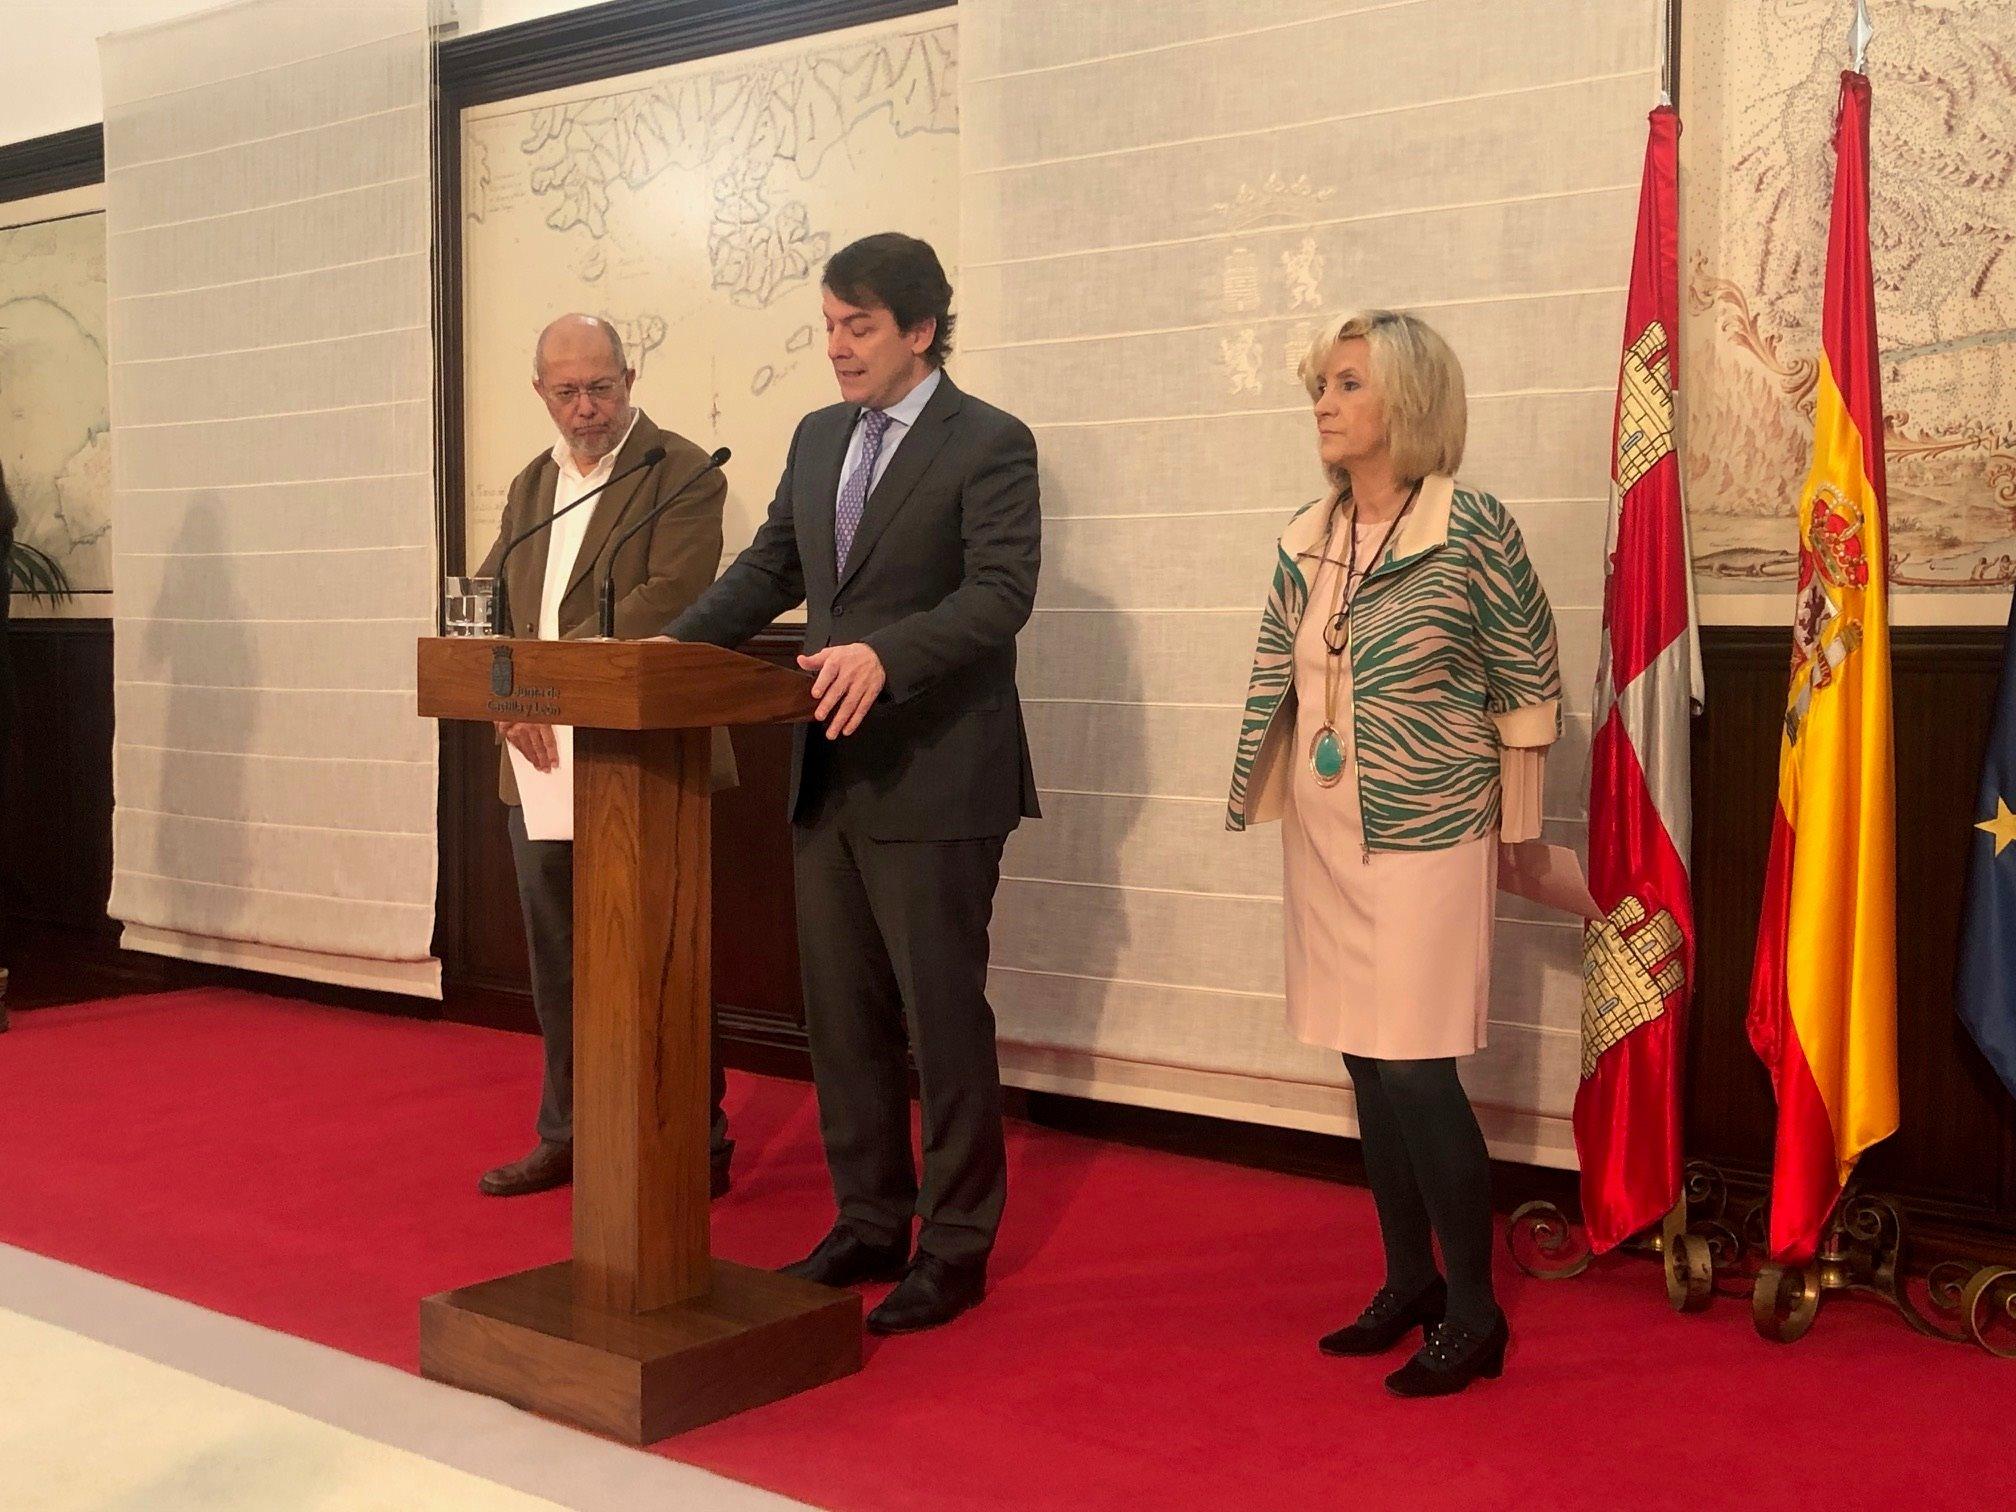 De izquierda a derecha: Francisco Igea, Alfonso Fernández Mañueco y Verónica Casado. Fuente: EP.